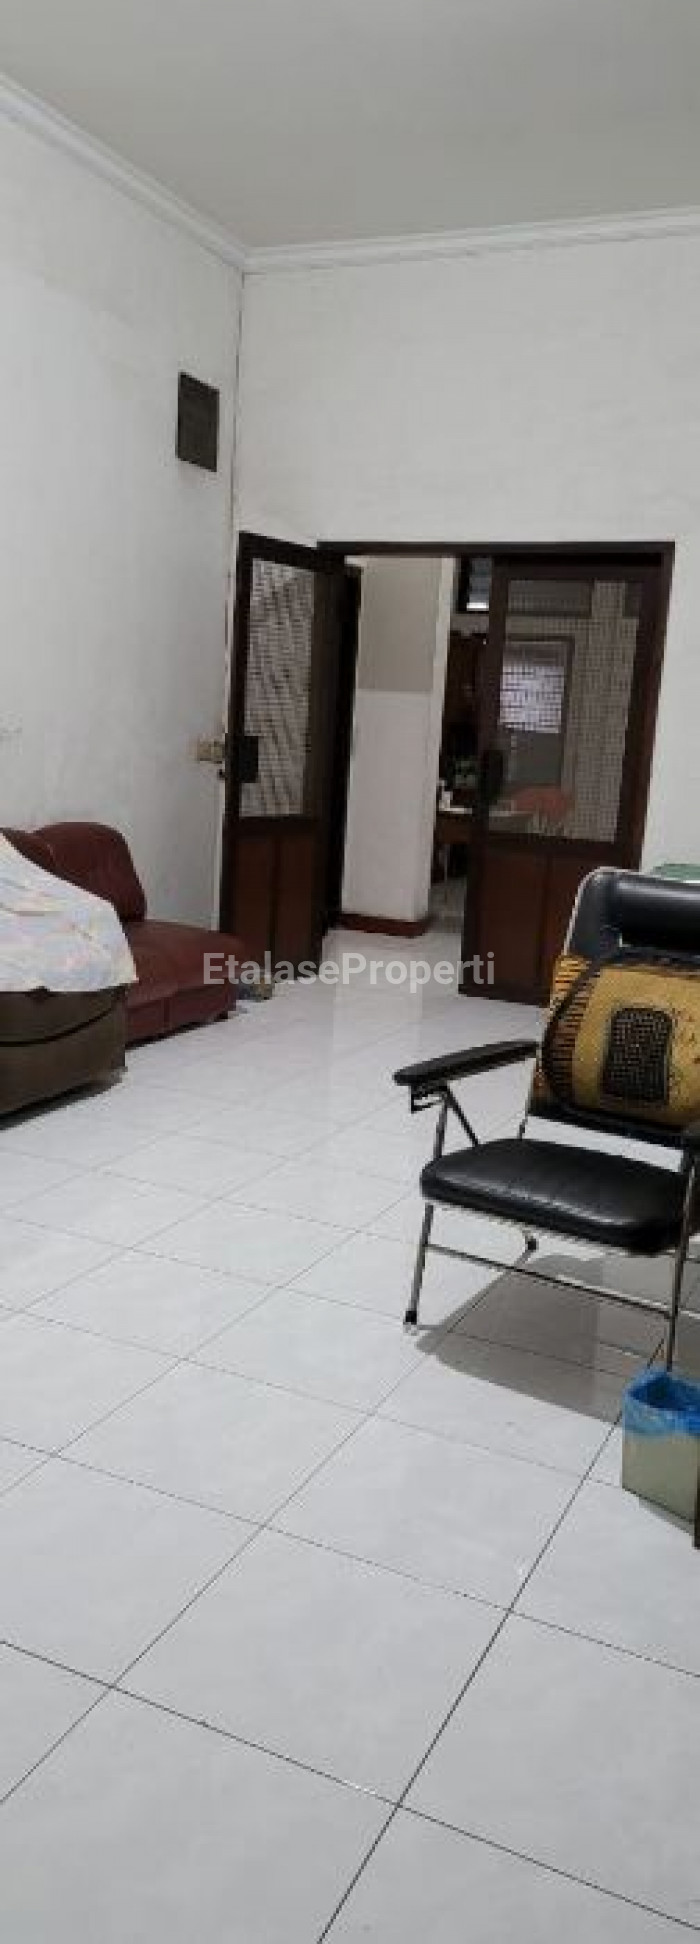 Foto properti Dijual Rumah Hitung Tanah Di Kemayoran Baru Surabaya Pusat Lokasi Strategis Harga Terjangkau 1